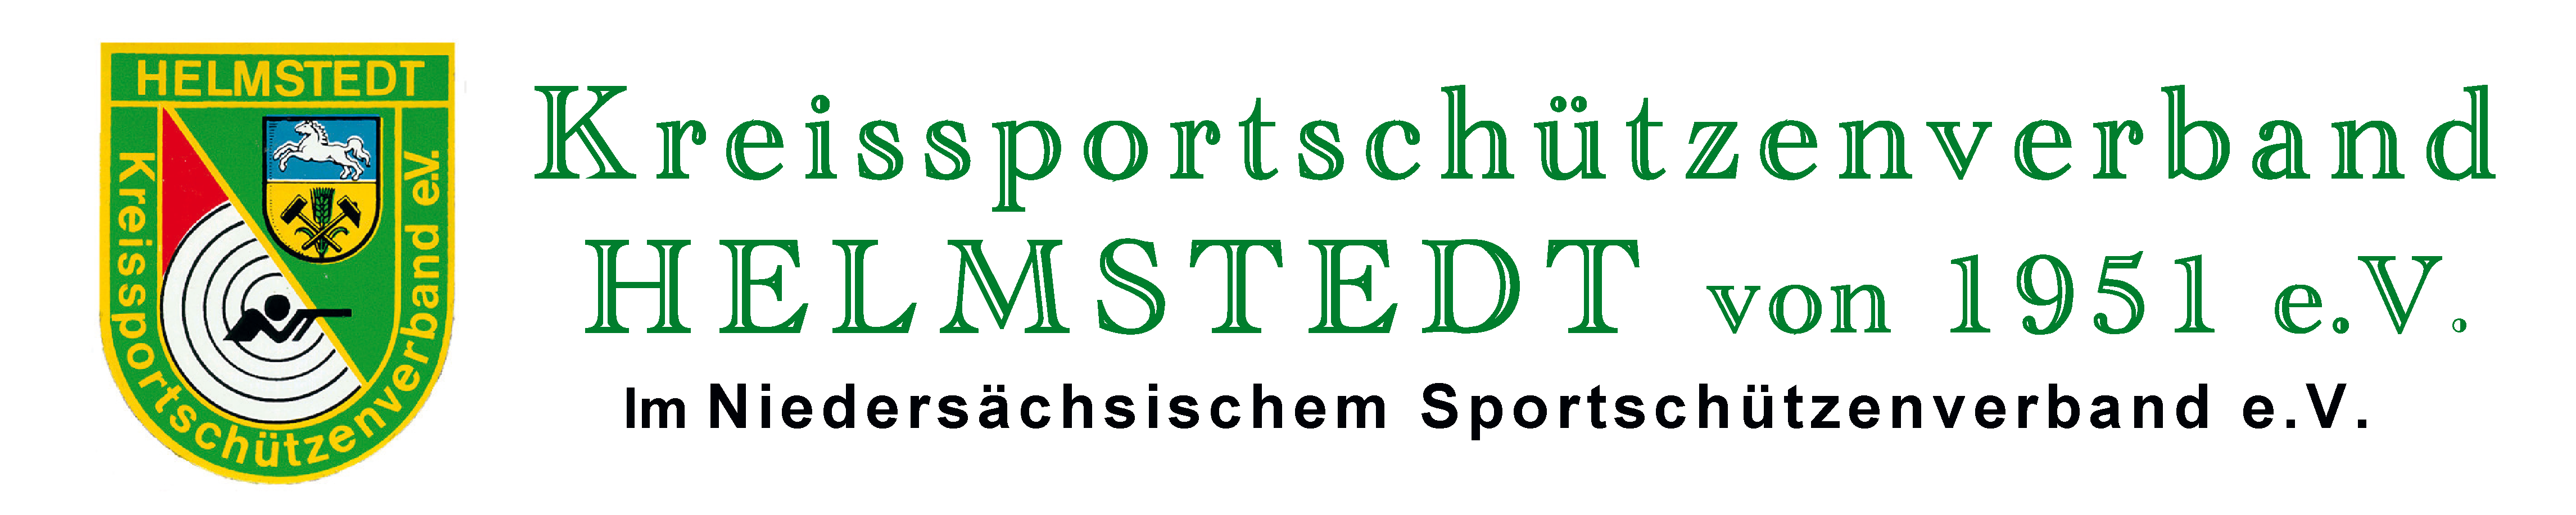 Kreissportschützenverband Helmstedt von 1951 e.V. Logo